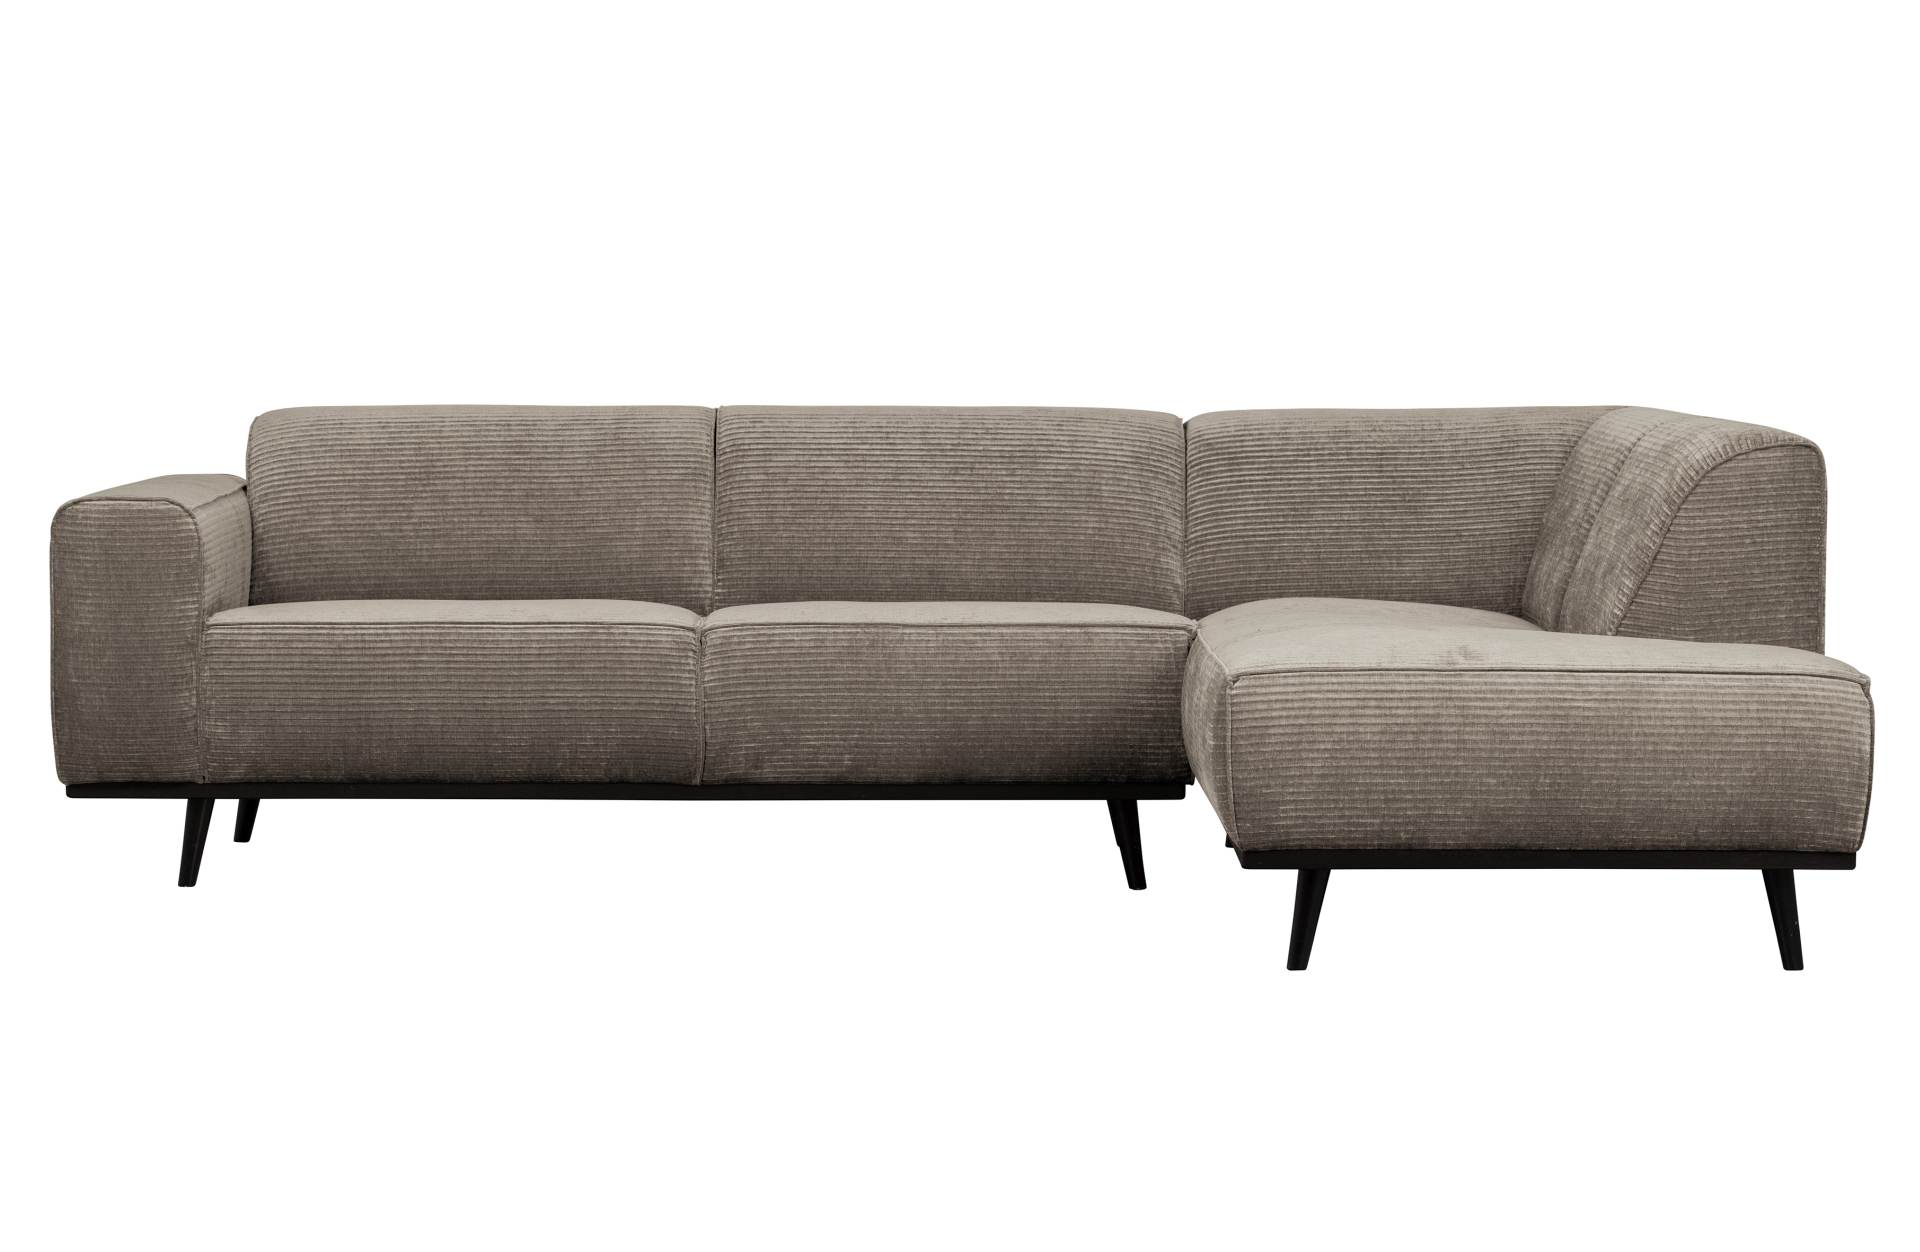 Das Ecksofa Statement überzeugt mit seinem modernen Design. Gefertigt wurde es aus gewebten Jacquard, welches einen Beige Farbton besitzen. Das Gestell ist aus Birkenholz und hat eine schwarze Farbe. Das Sofa hat eine Breite von 274 cm.